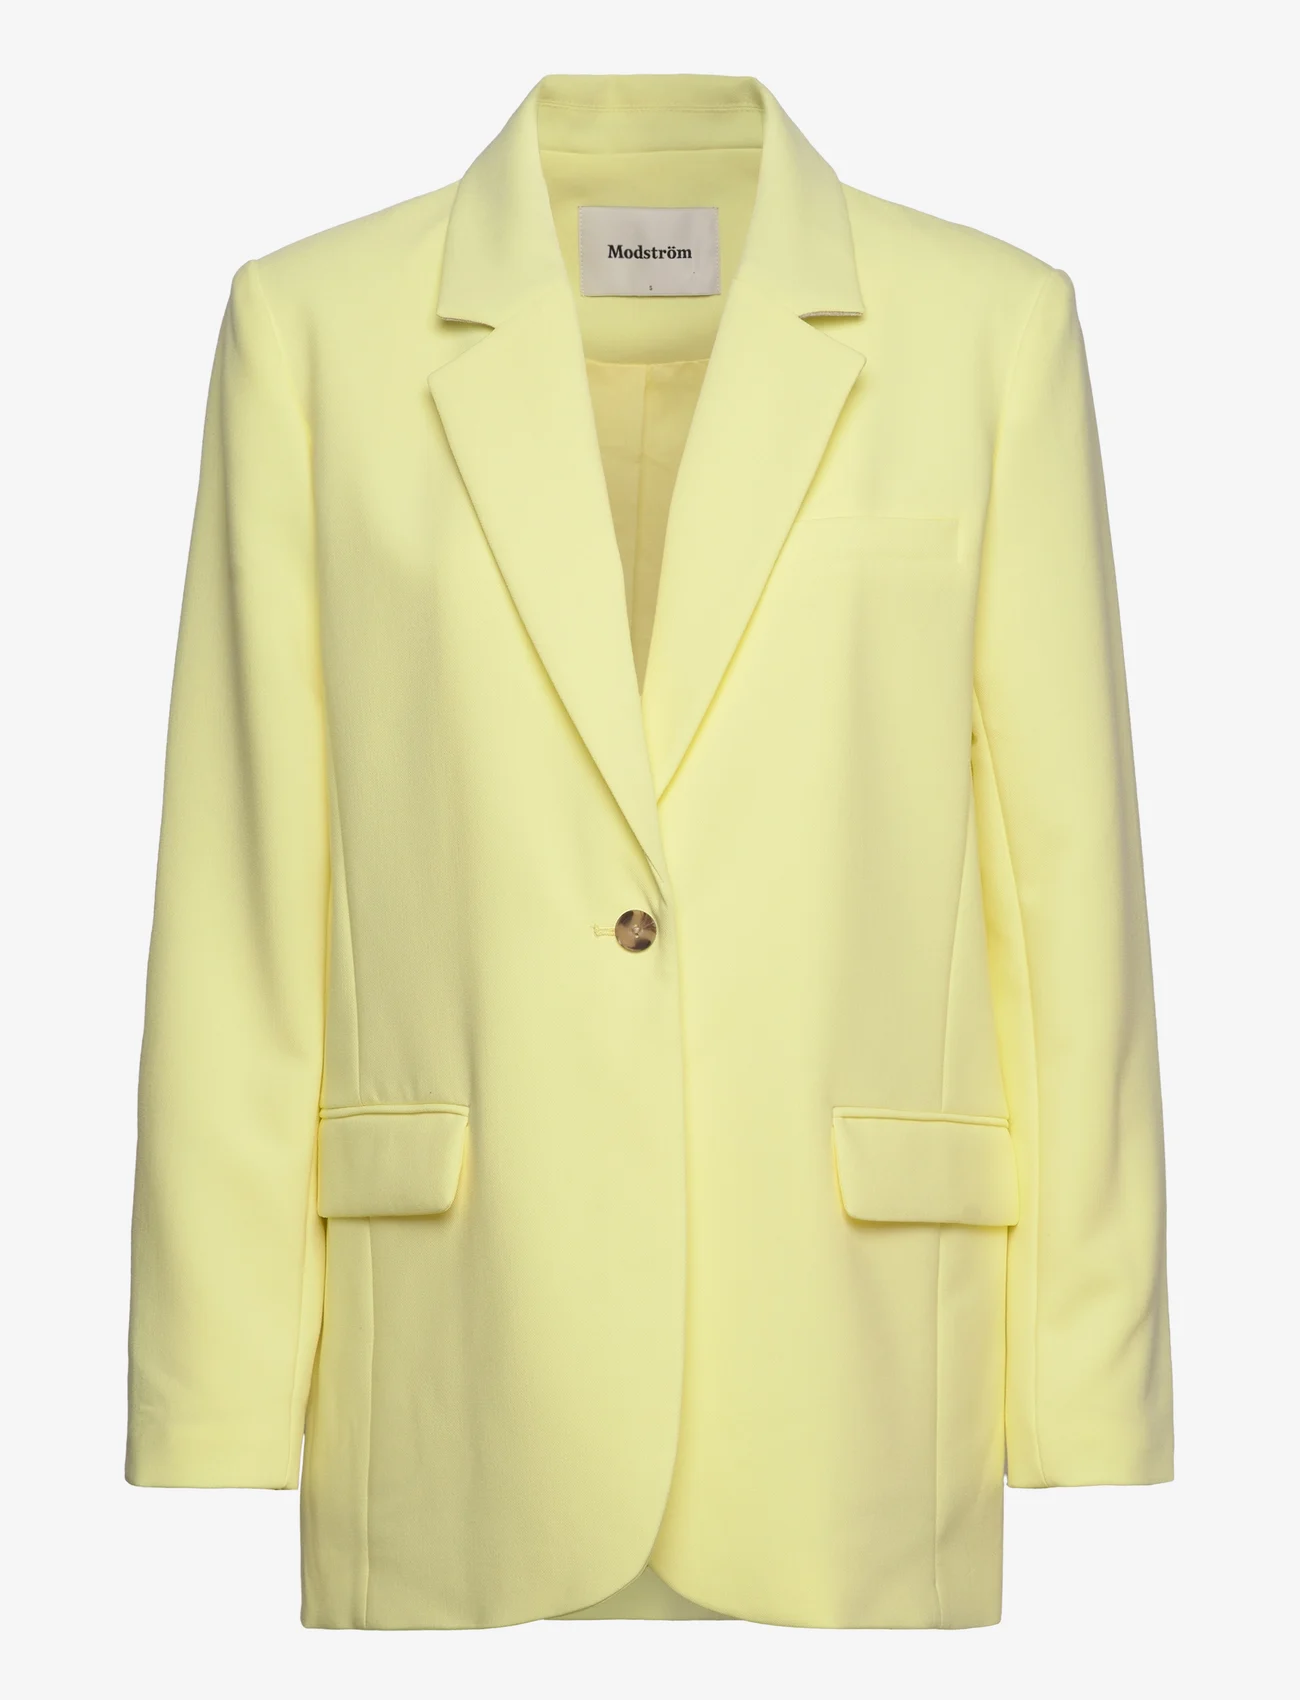 Modström - Gale blazer - odzież imprezowa w cenach outletowych - yellow pear - 0